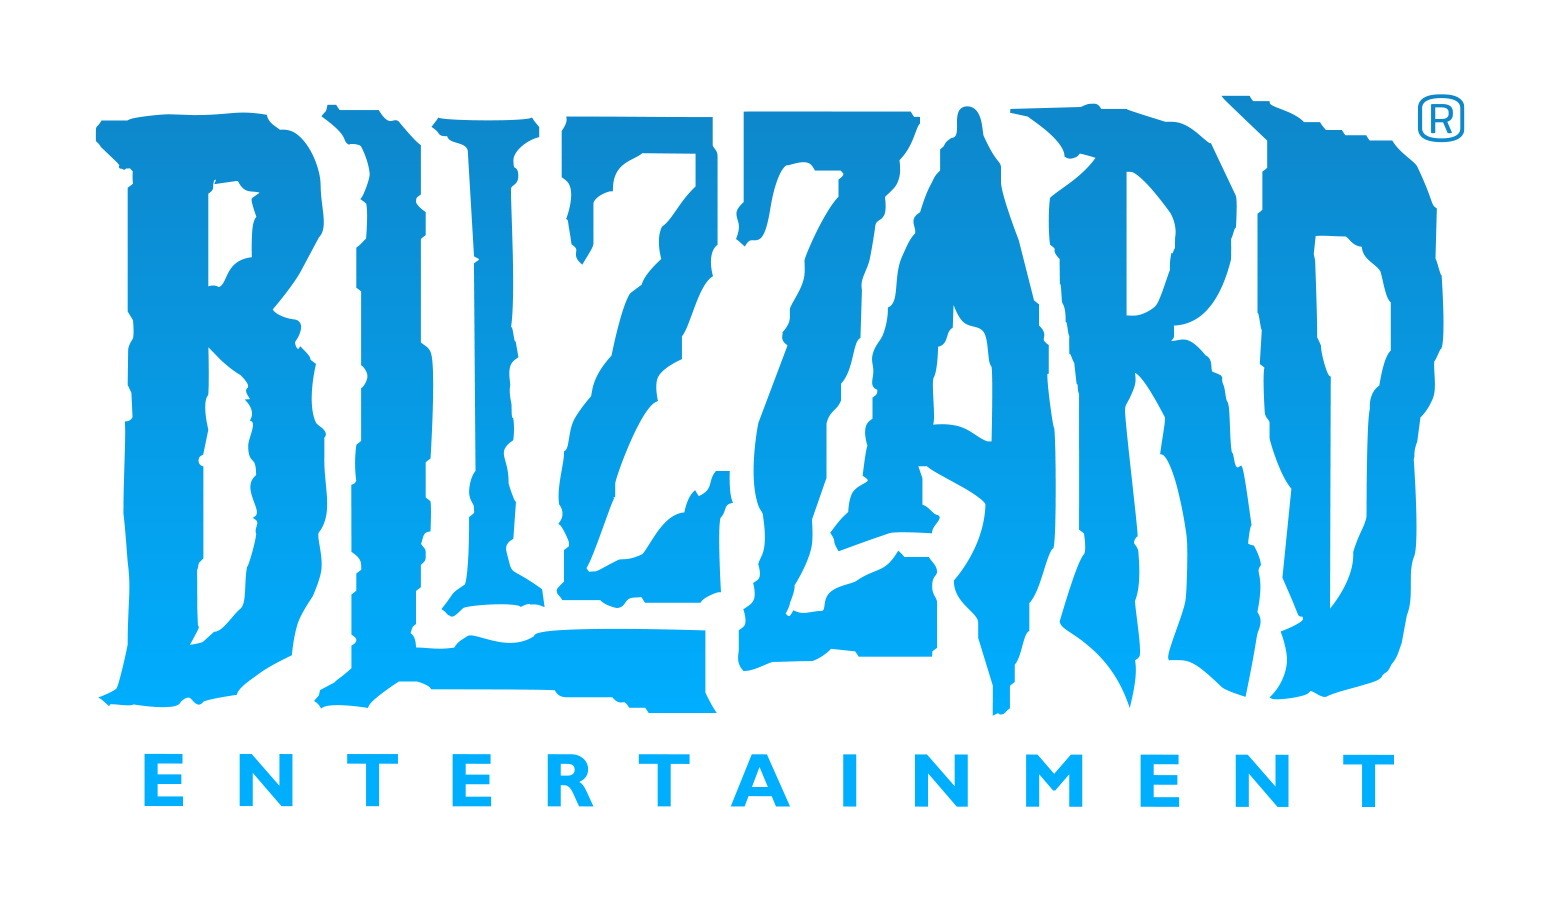 數百名 Blizzard 員工向公司要求提升薪資等 發言人表示將參考意見進行調整